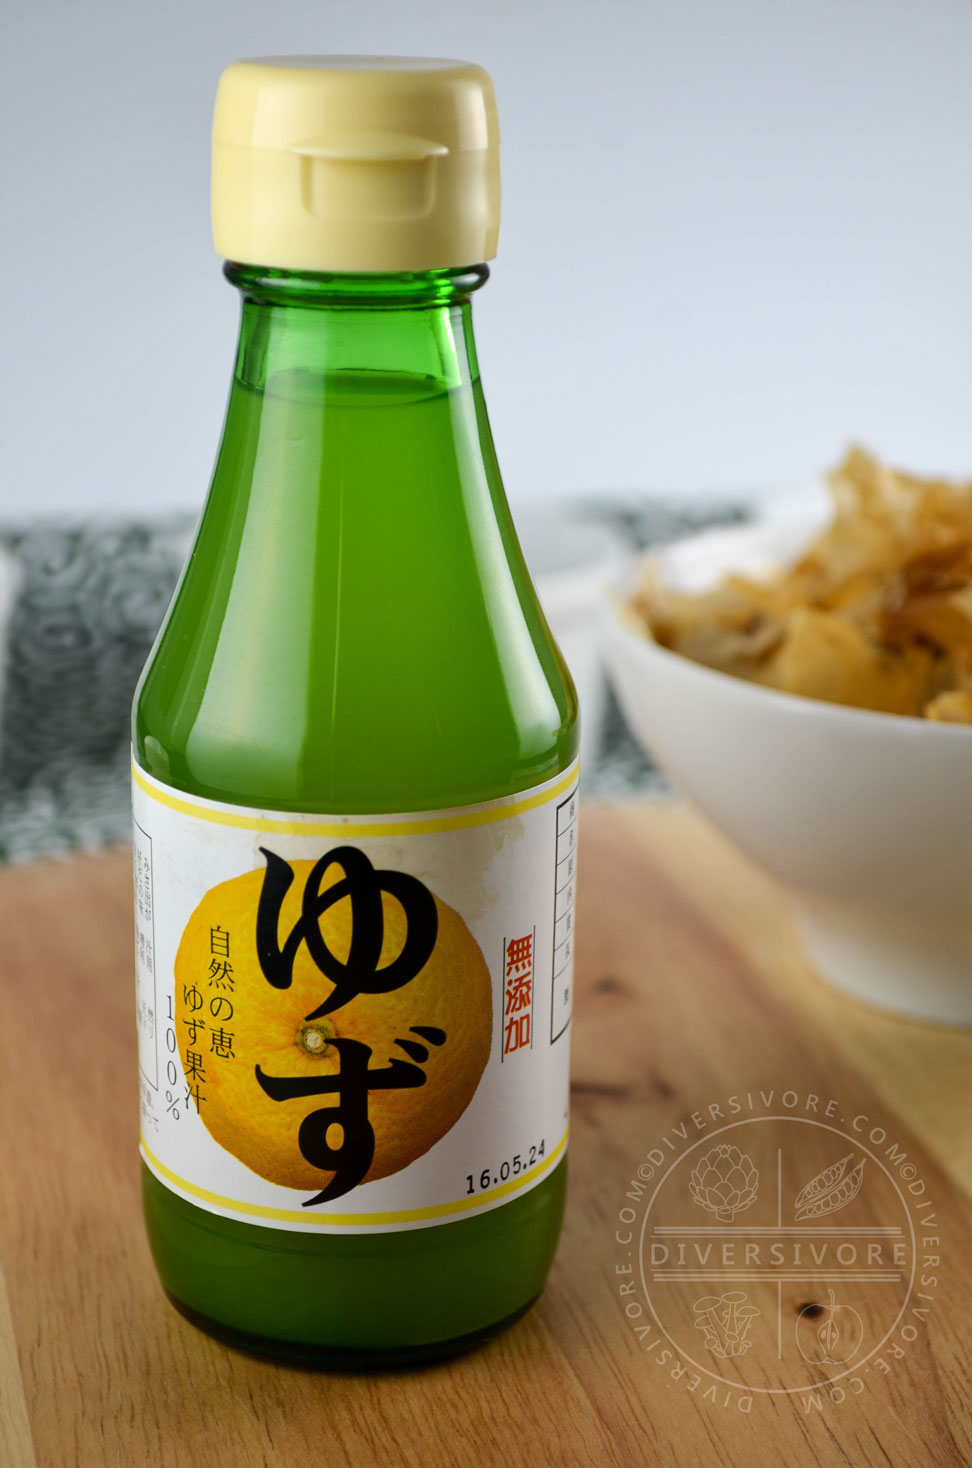 A bottle of Japanese yuzu juice.